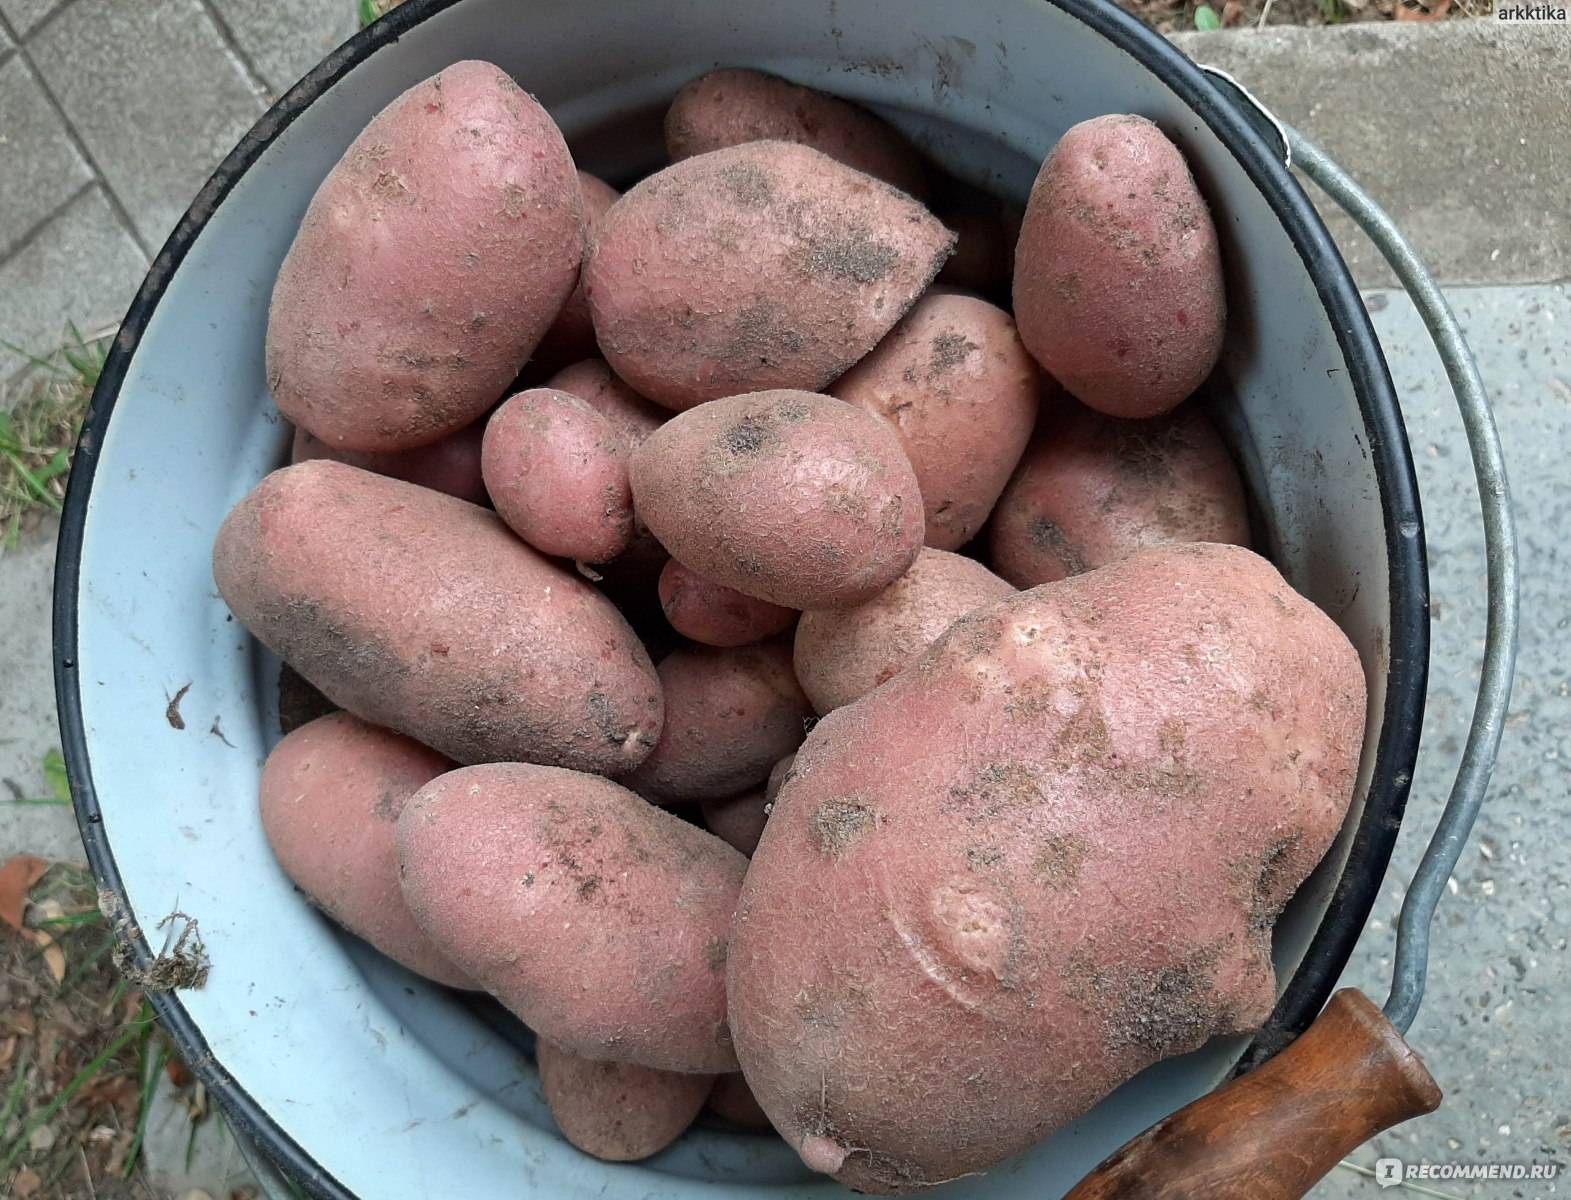 Картофель ред скарлет: характеристика и описание сорта, выращивание и уход